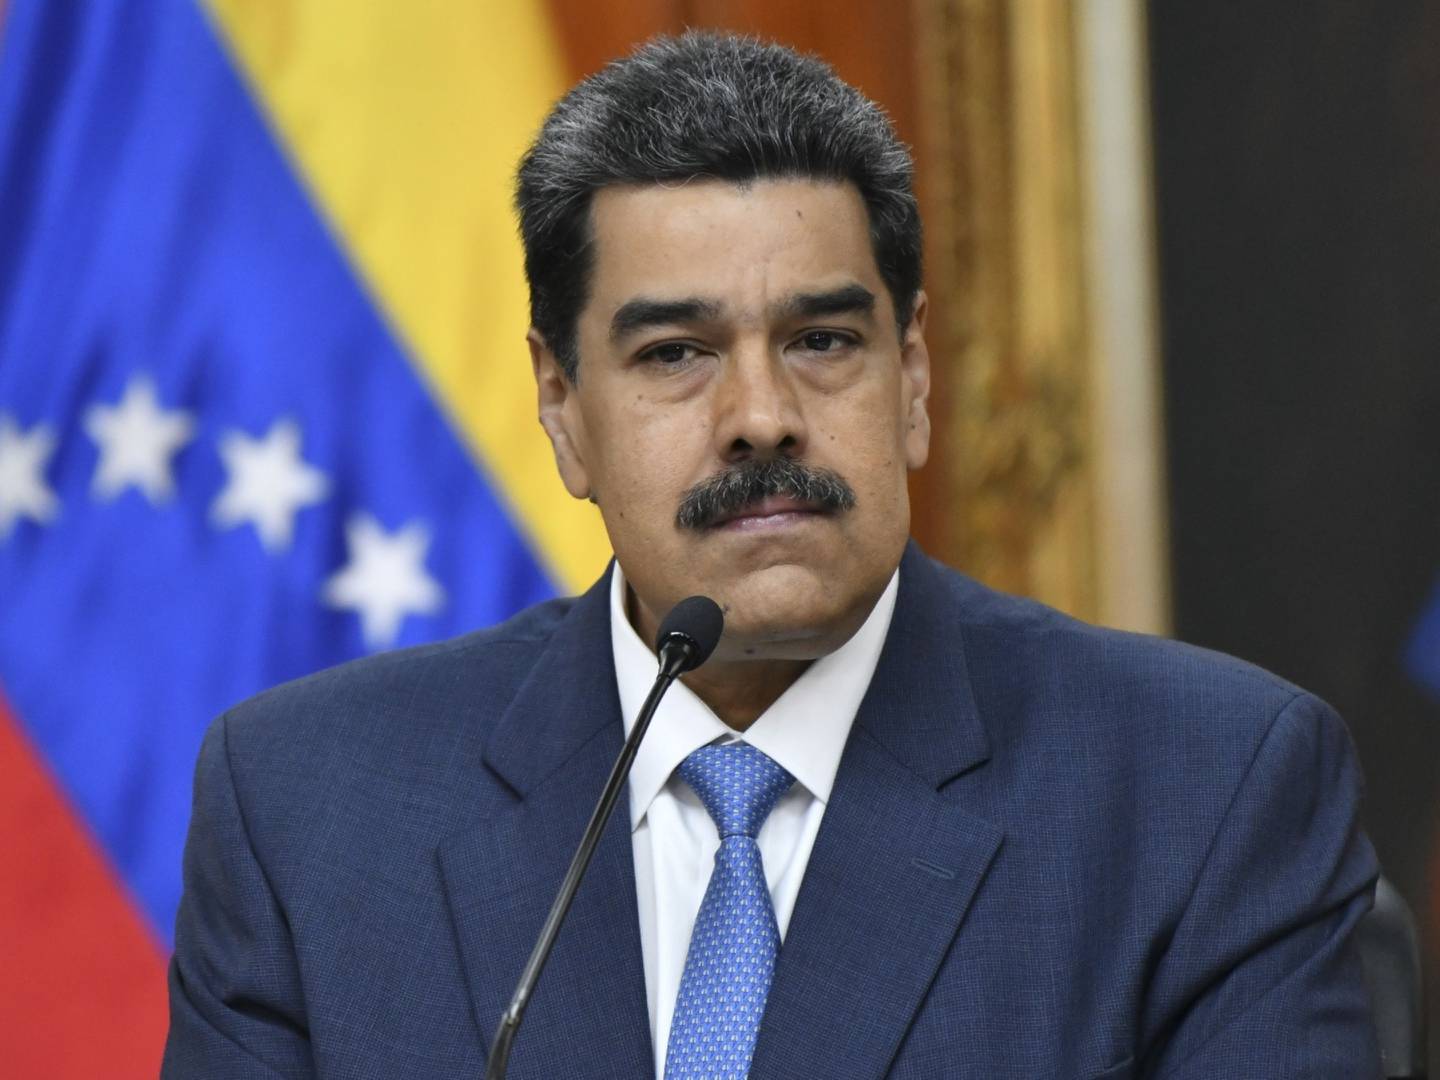 El presidente venezolano, Nicolás Maduro, acusó a los observadores de ser “espías” tras la publicación de un reporte en el que señalaron deficiencias e irregularidades en las elecciones regionales del 21 de noviembre.